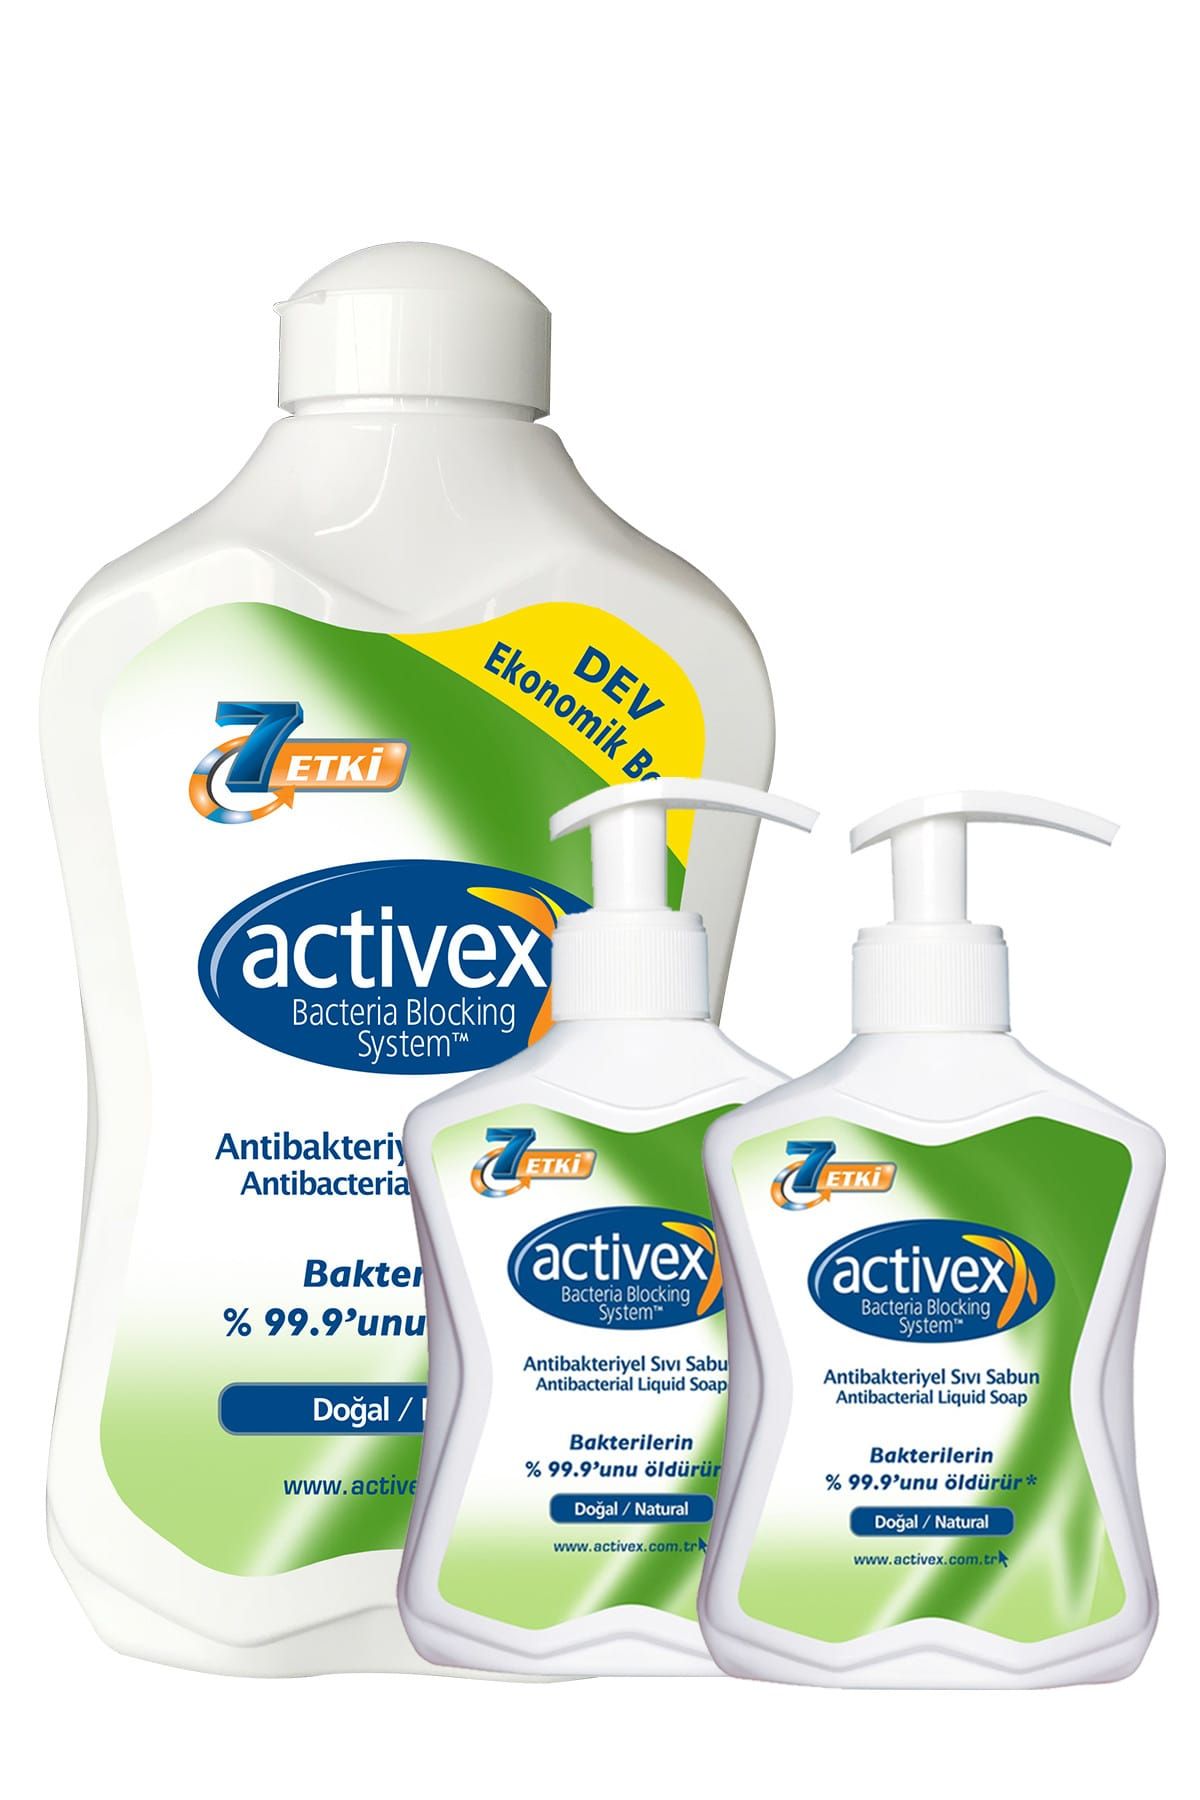 Activex Antibakteriyel Sıvı Sabun Doğal 1.5 +300+300 Fırsatpaketi